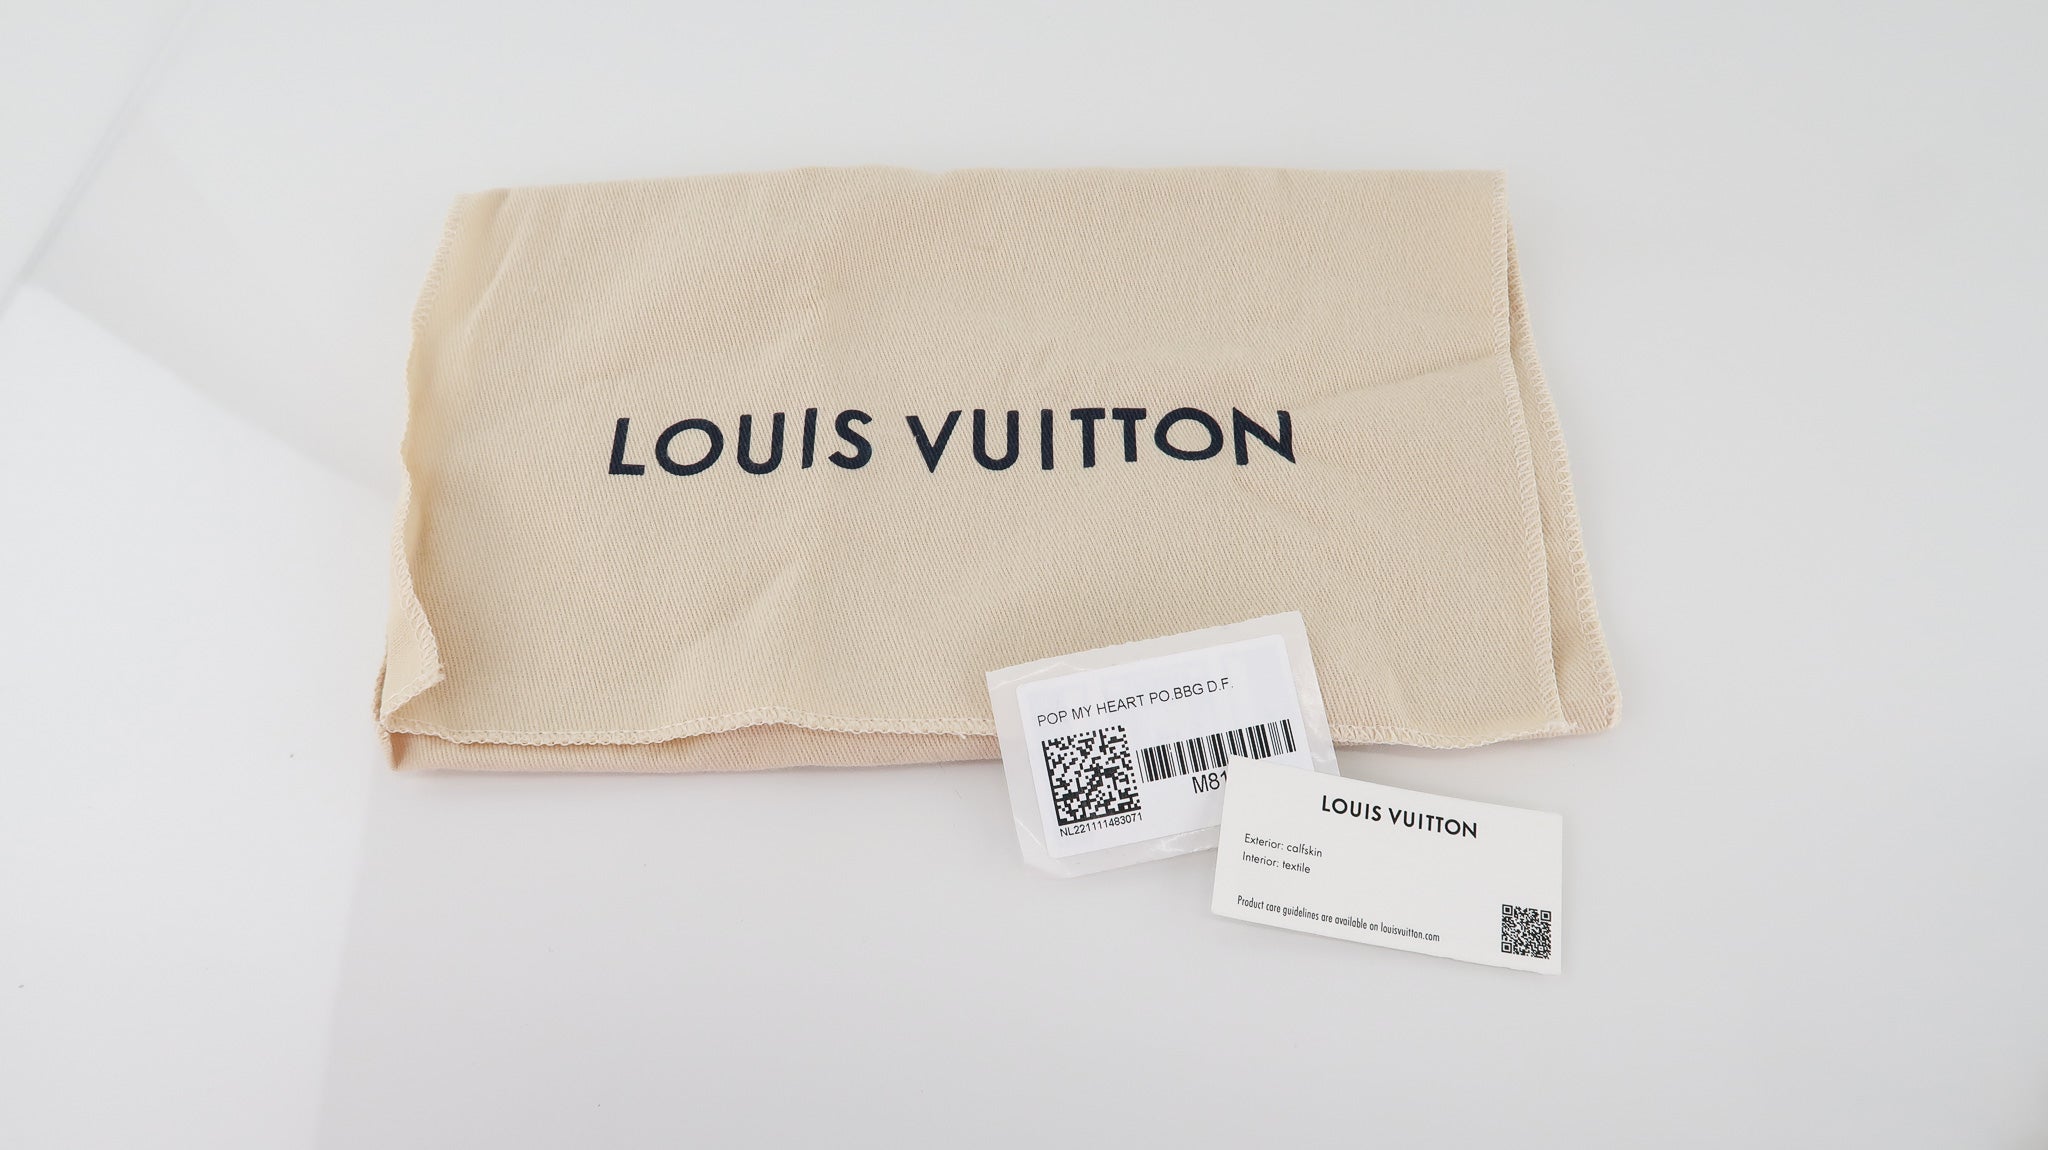 Louis Vuitton Calfskin Embroidered Monogram Pop My Heart Bag Pink